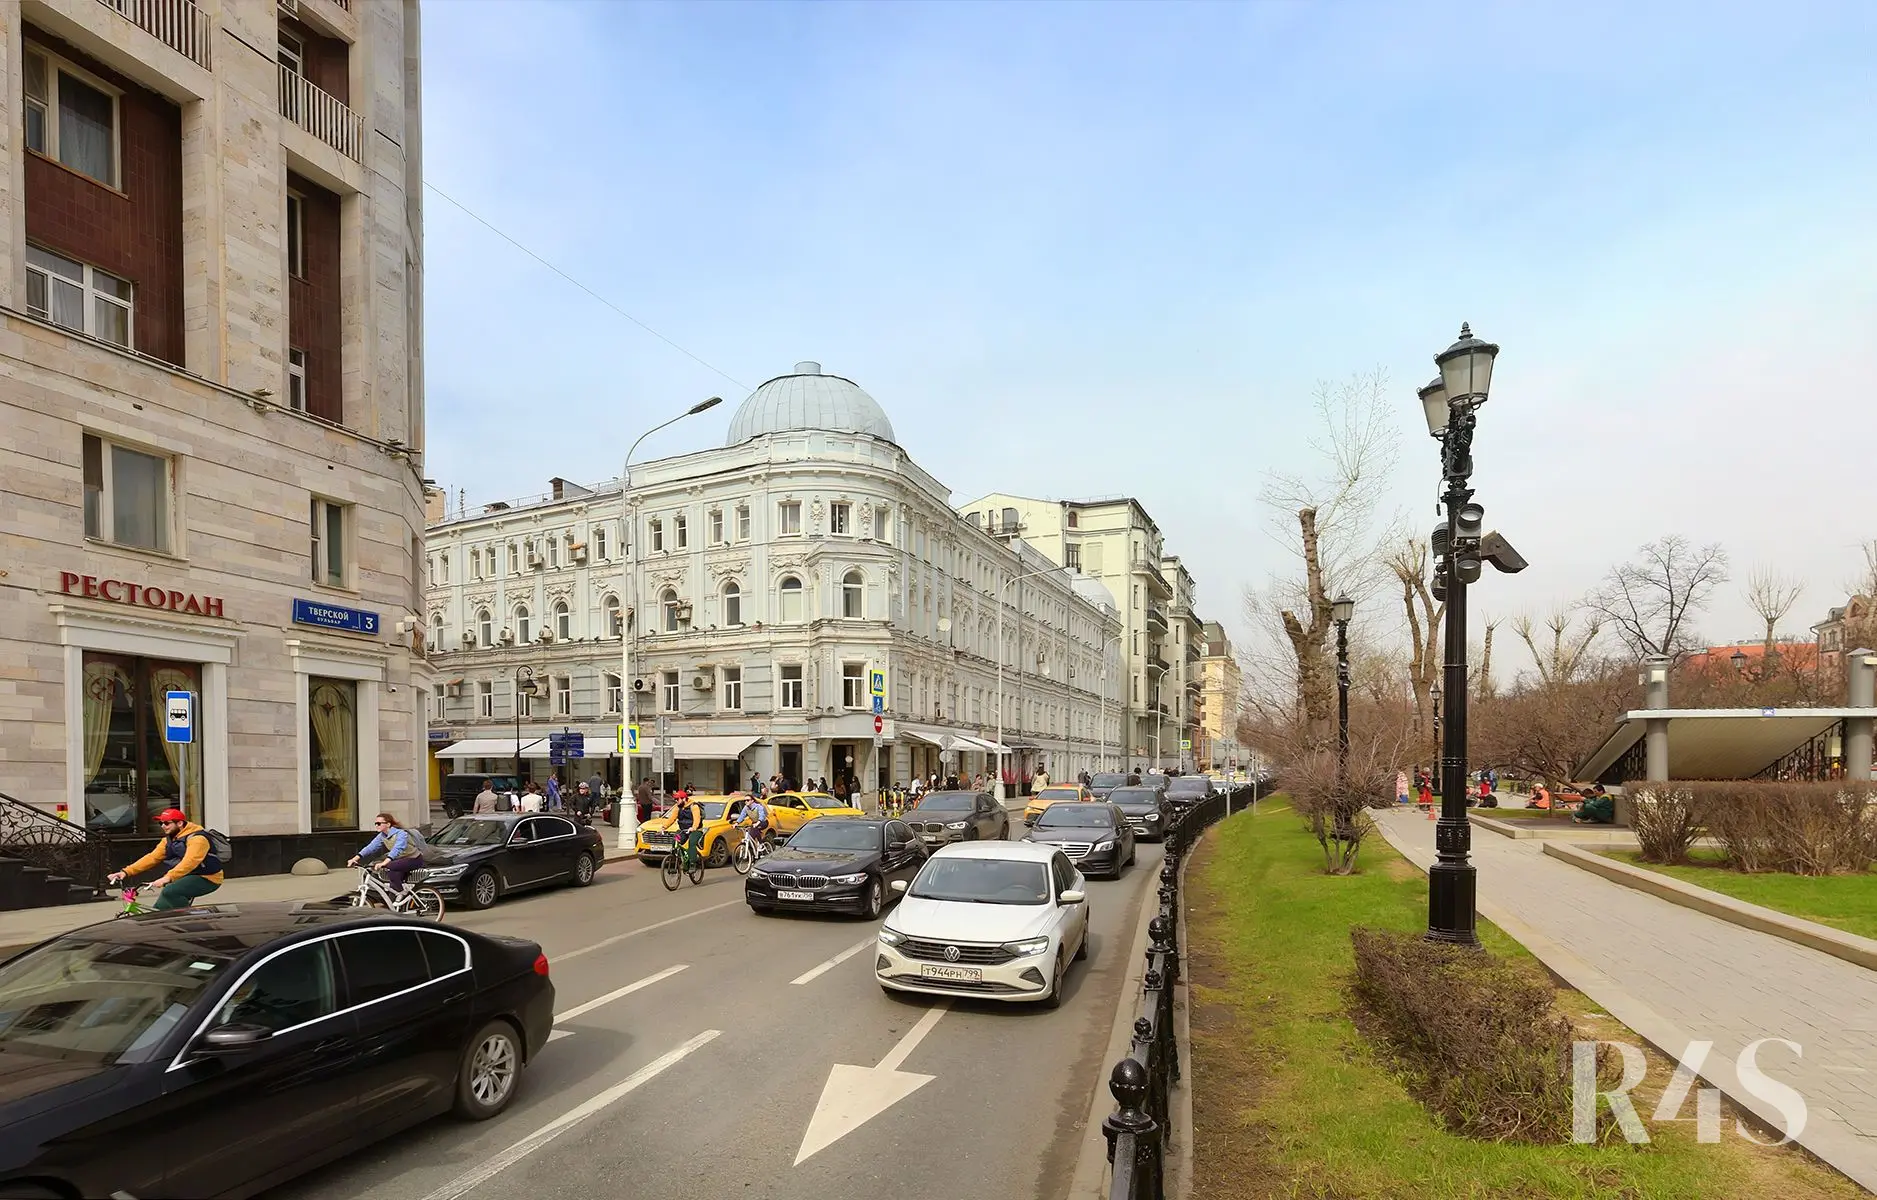 Аренда торгового помещения площадью 173.8 м2 в Москве: Малая Бронная, 2с1 R4S | Realty4Sale